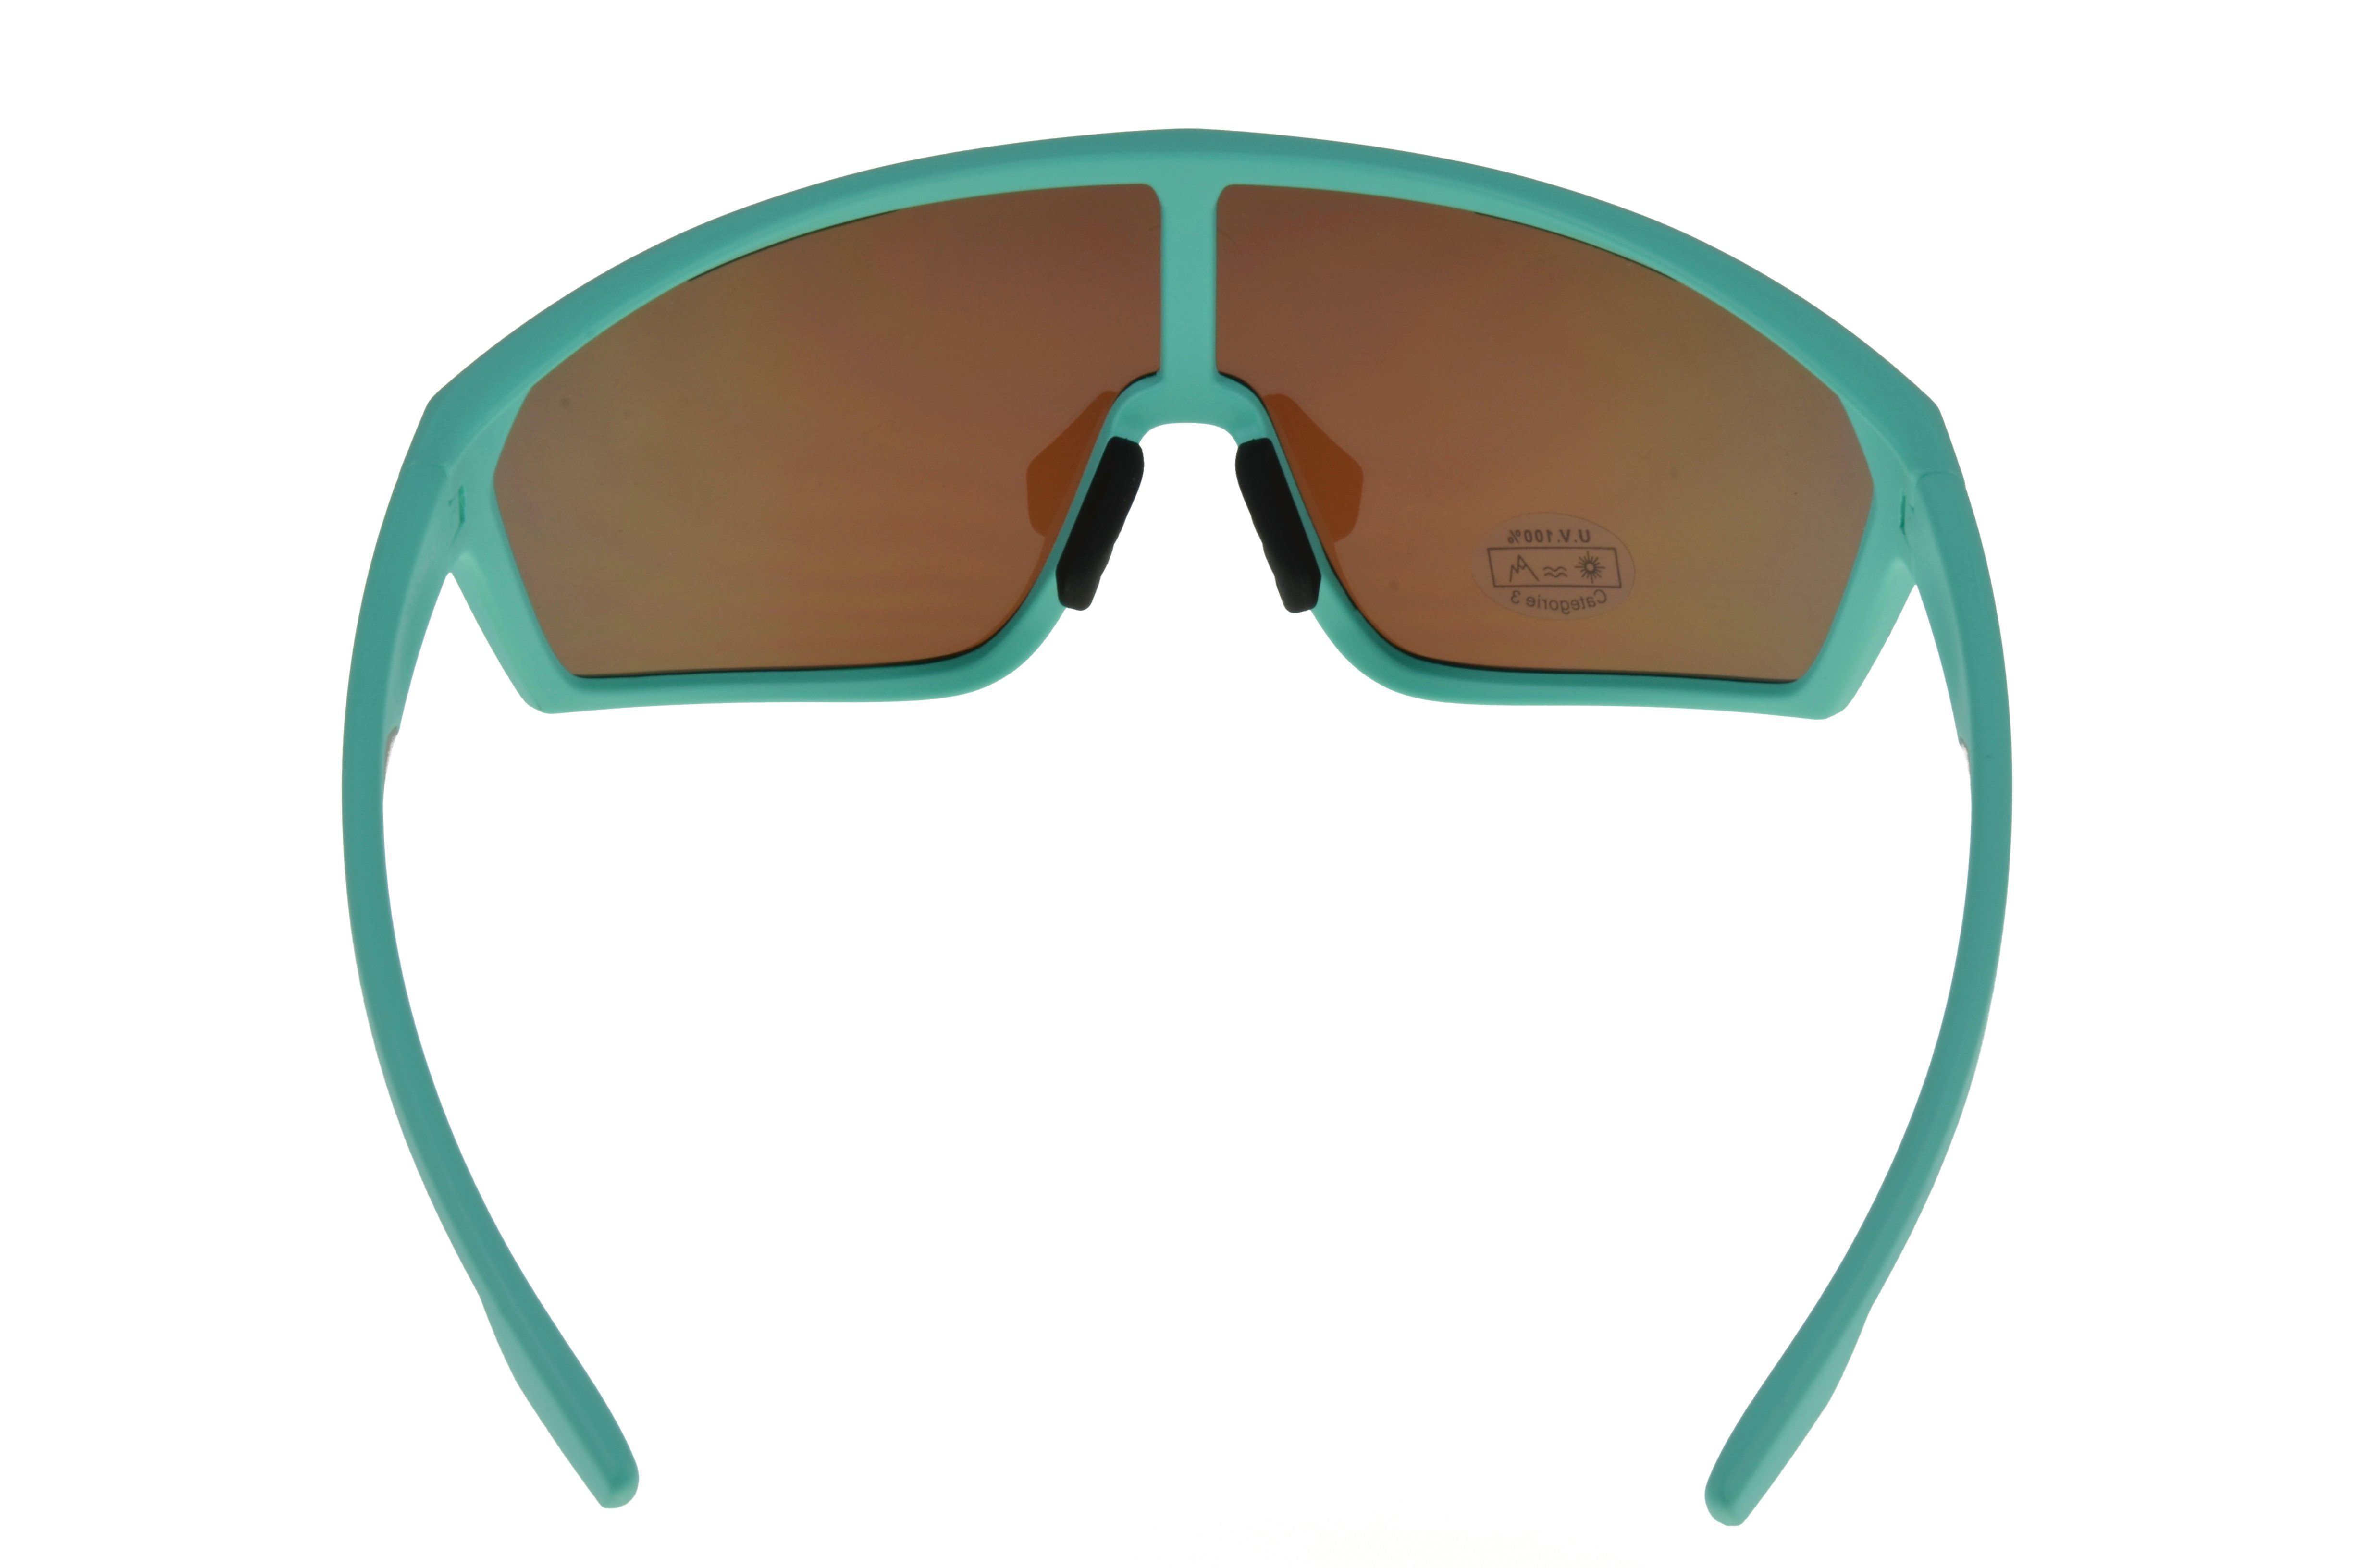 blau, tolles weiß WS5838 Gamswild Damen Sonnenbrille TR90 Herren grün, Design, Monoscheibensonnenbrille Fahrradbrille mintgrün Skibrille Unisex